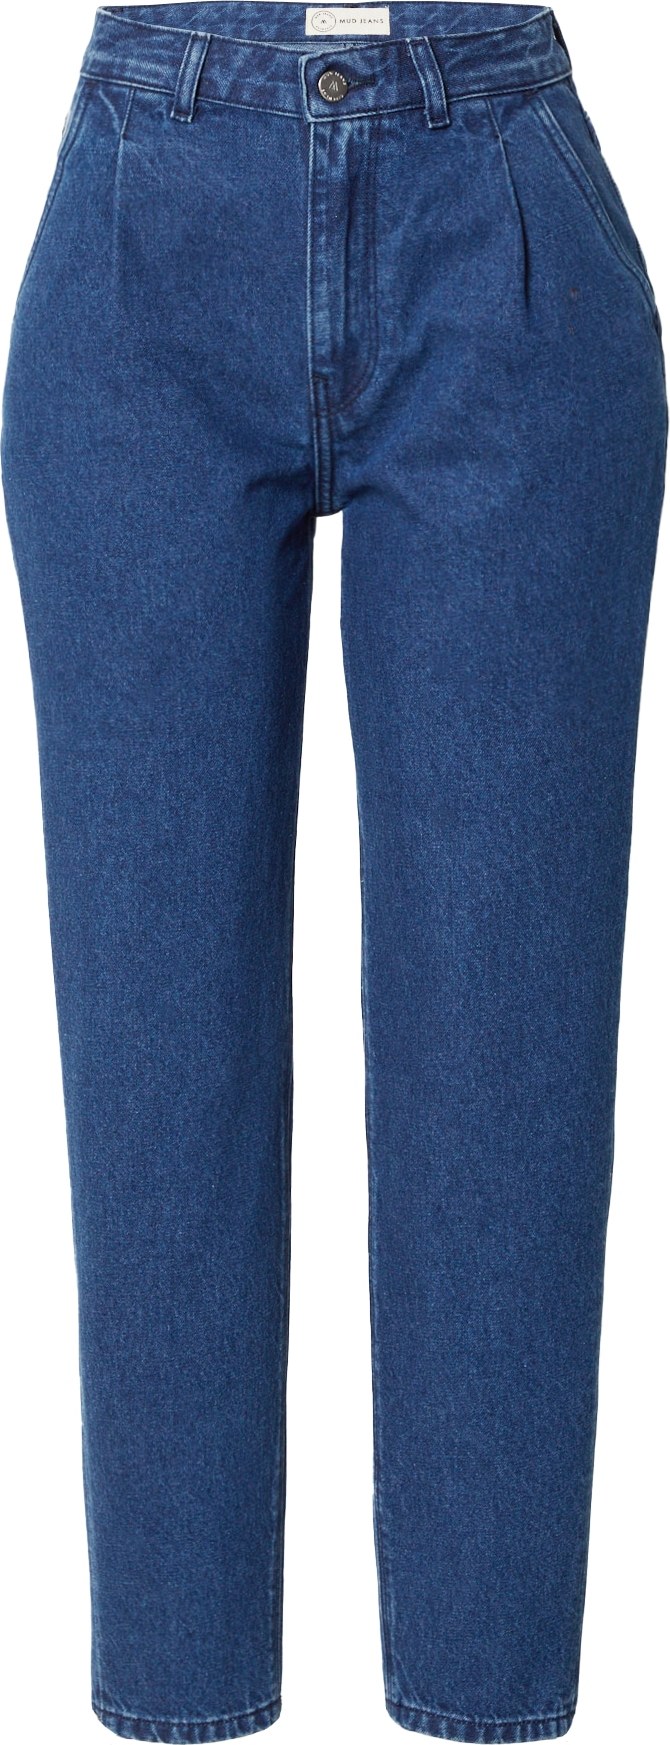 MUD Jeans Džíny se sklady v pase 'Bailey' modrá džínovina / bílá